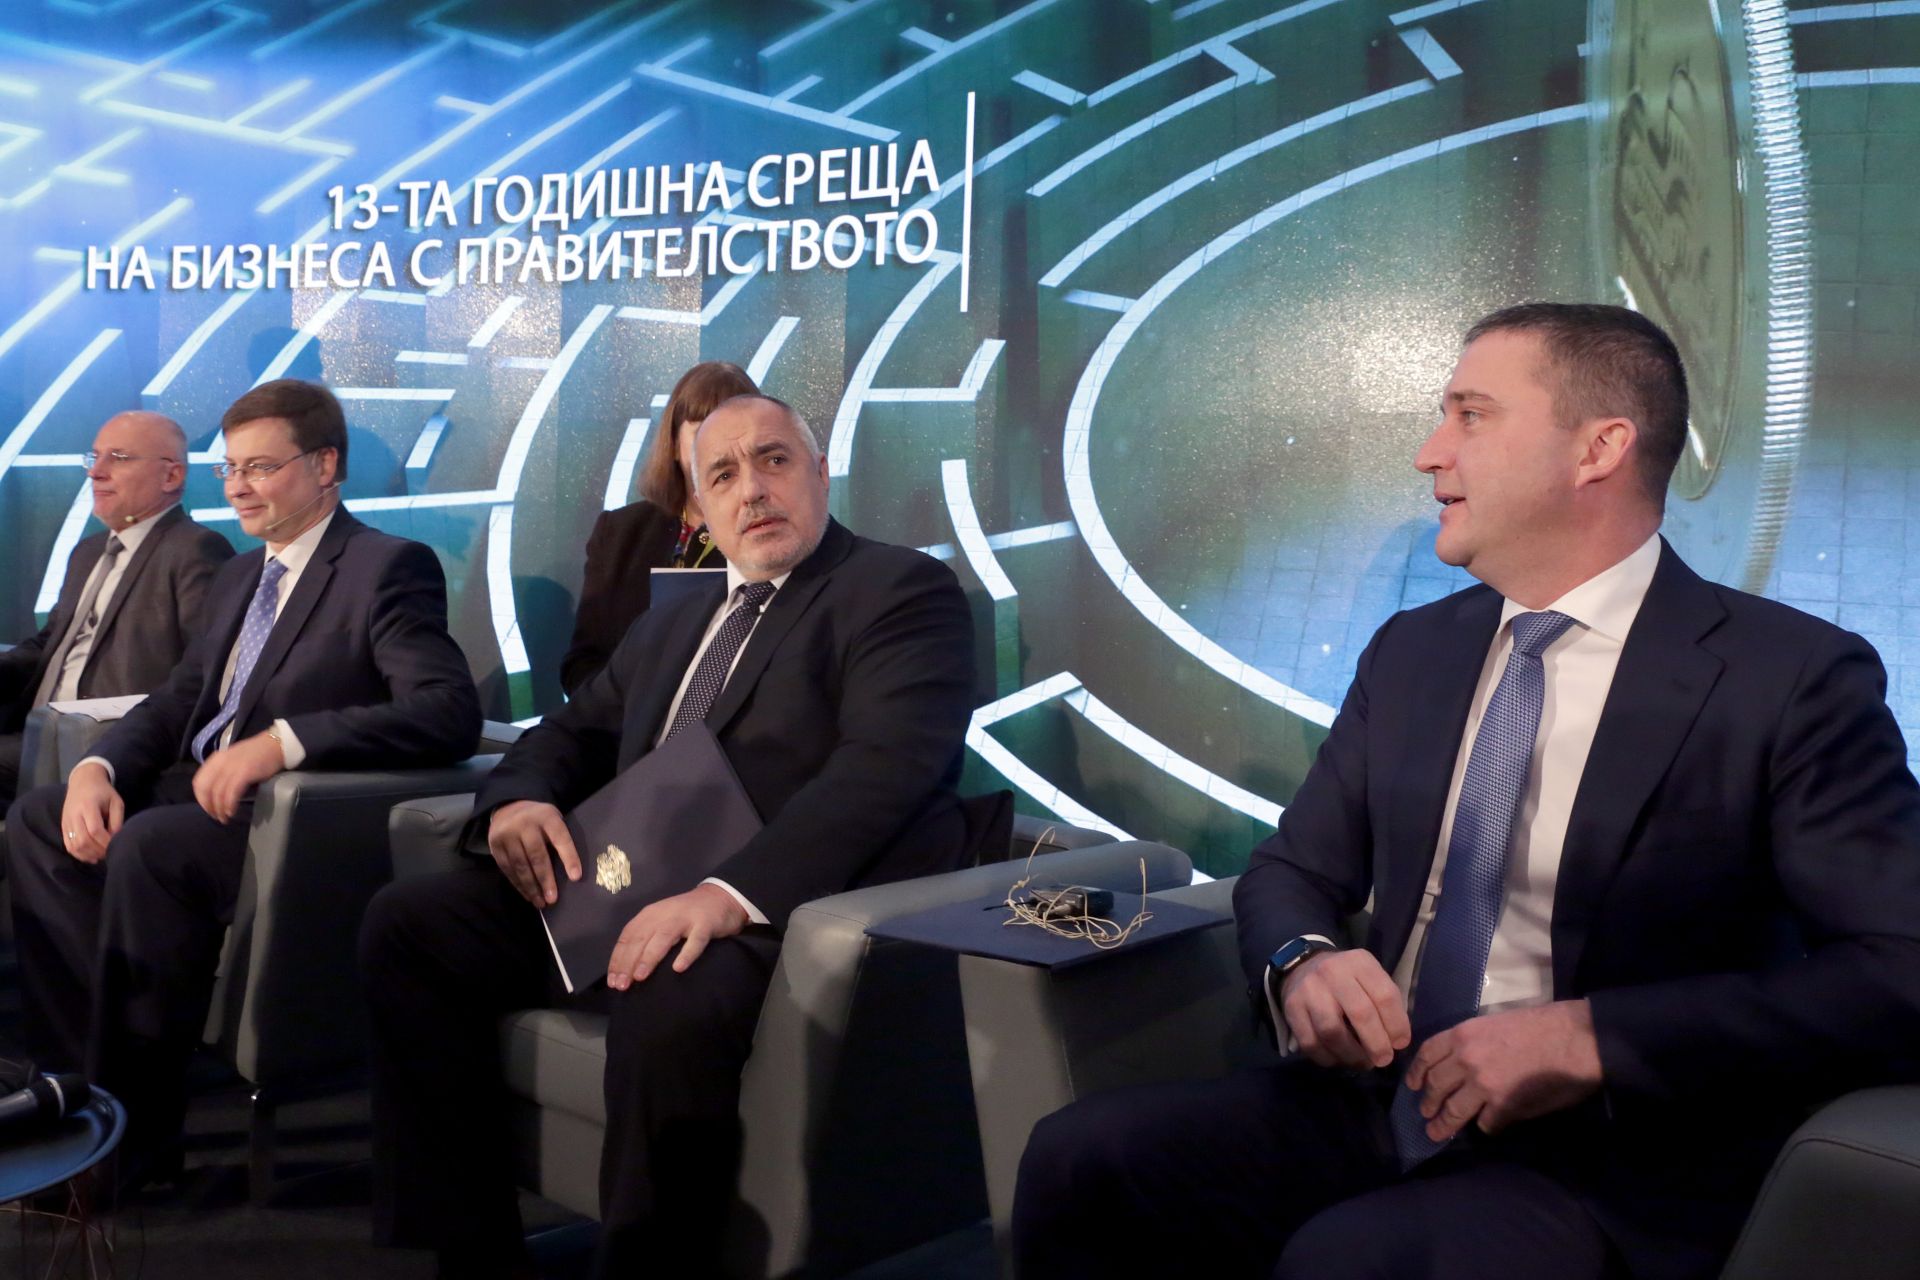 Влизането на страната в Еврозоната ще допринесе за предимства за цената на финансирането на българската икономика, каза финансовият министър